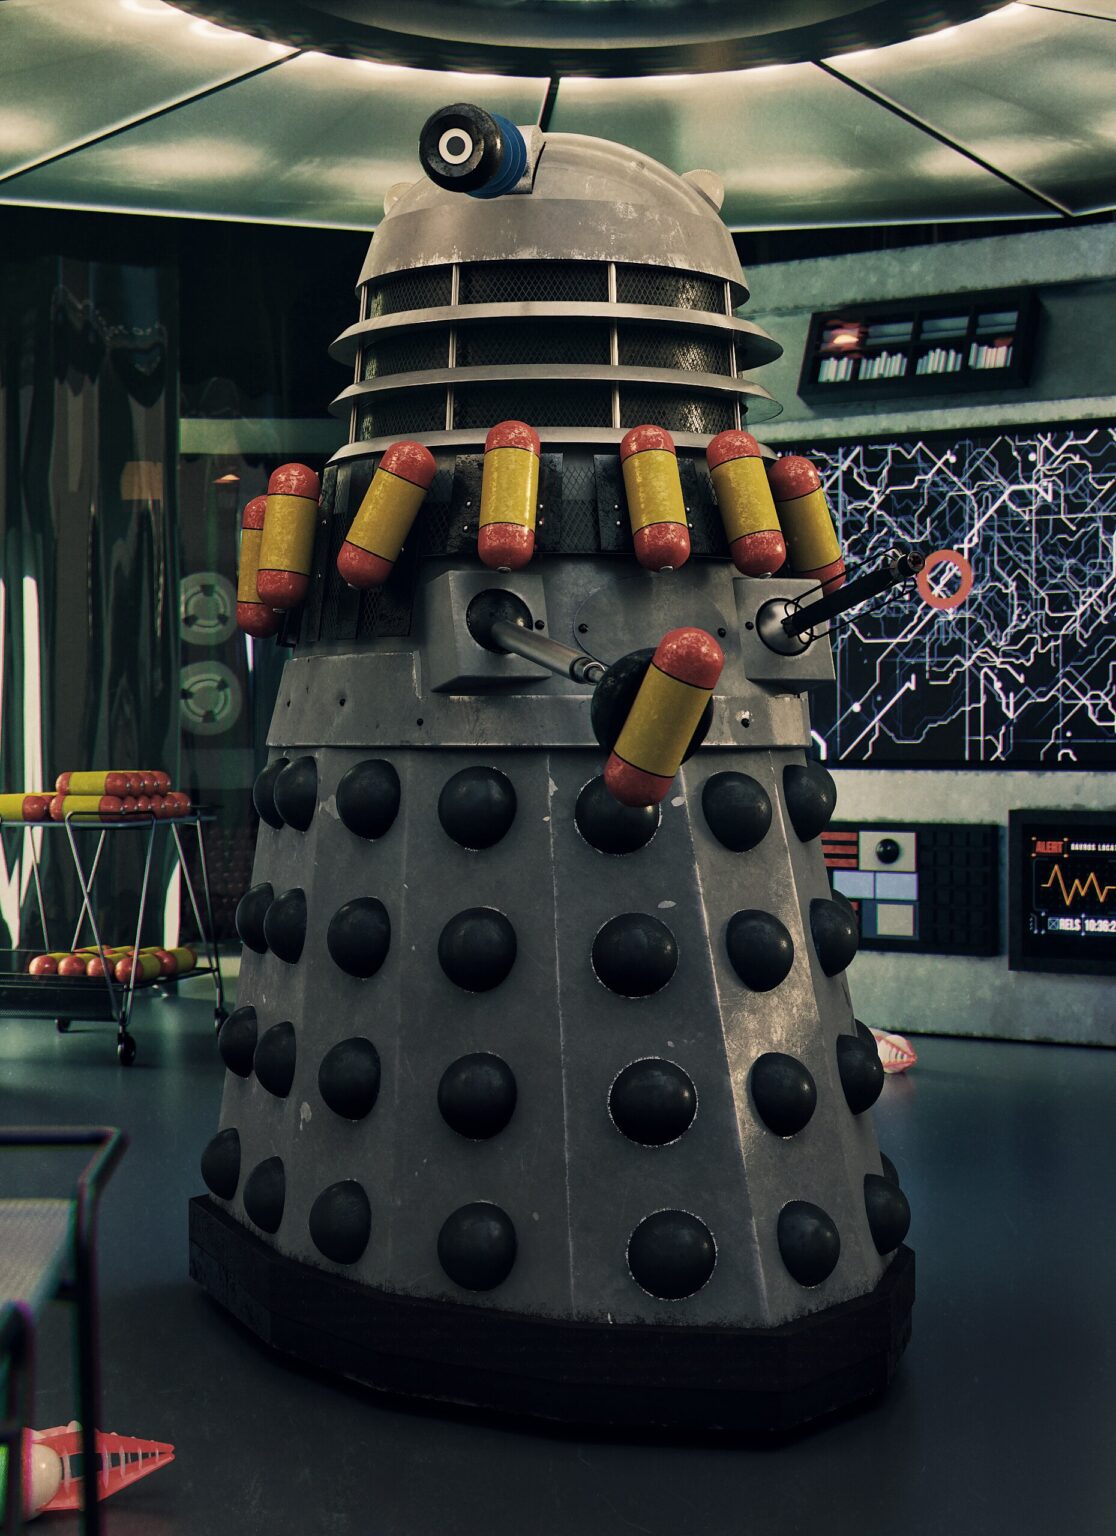 MK3 Type III Destiny Dalek - The Daleks era 1 - By Phil Shaw